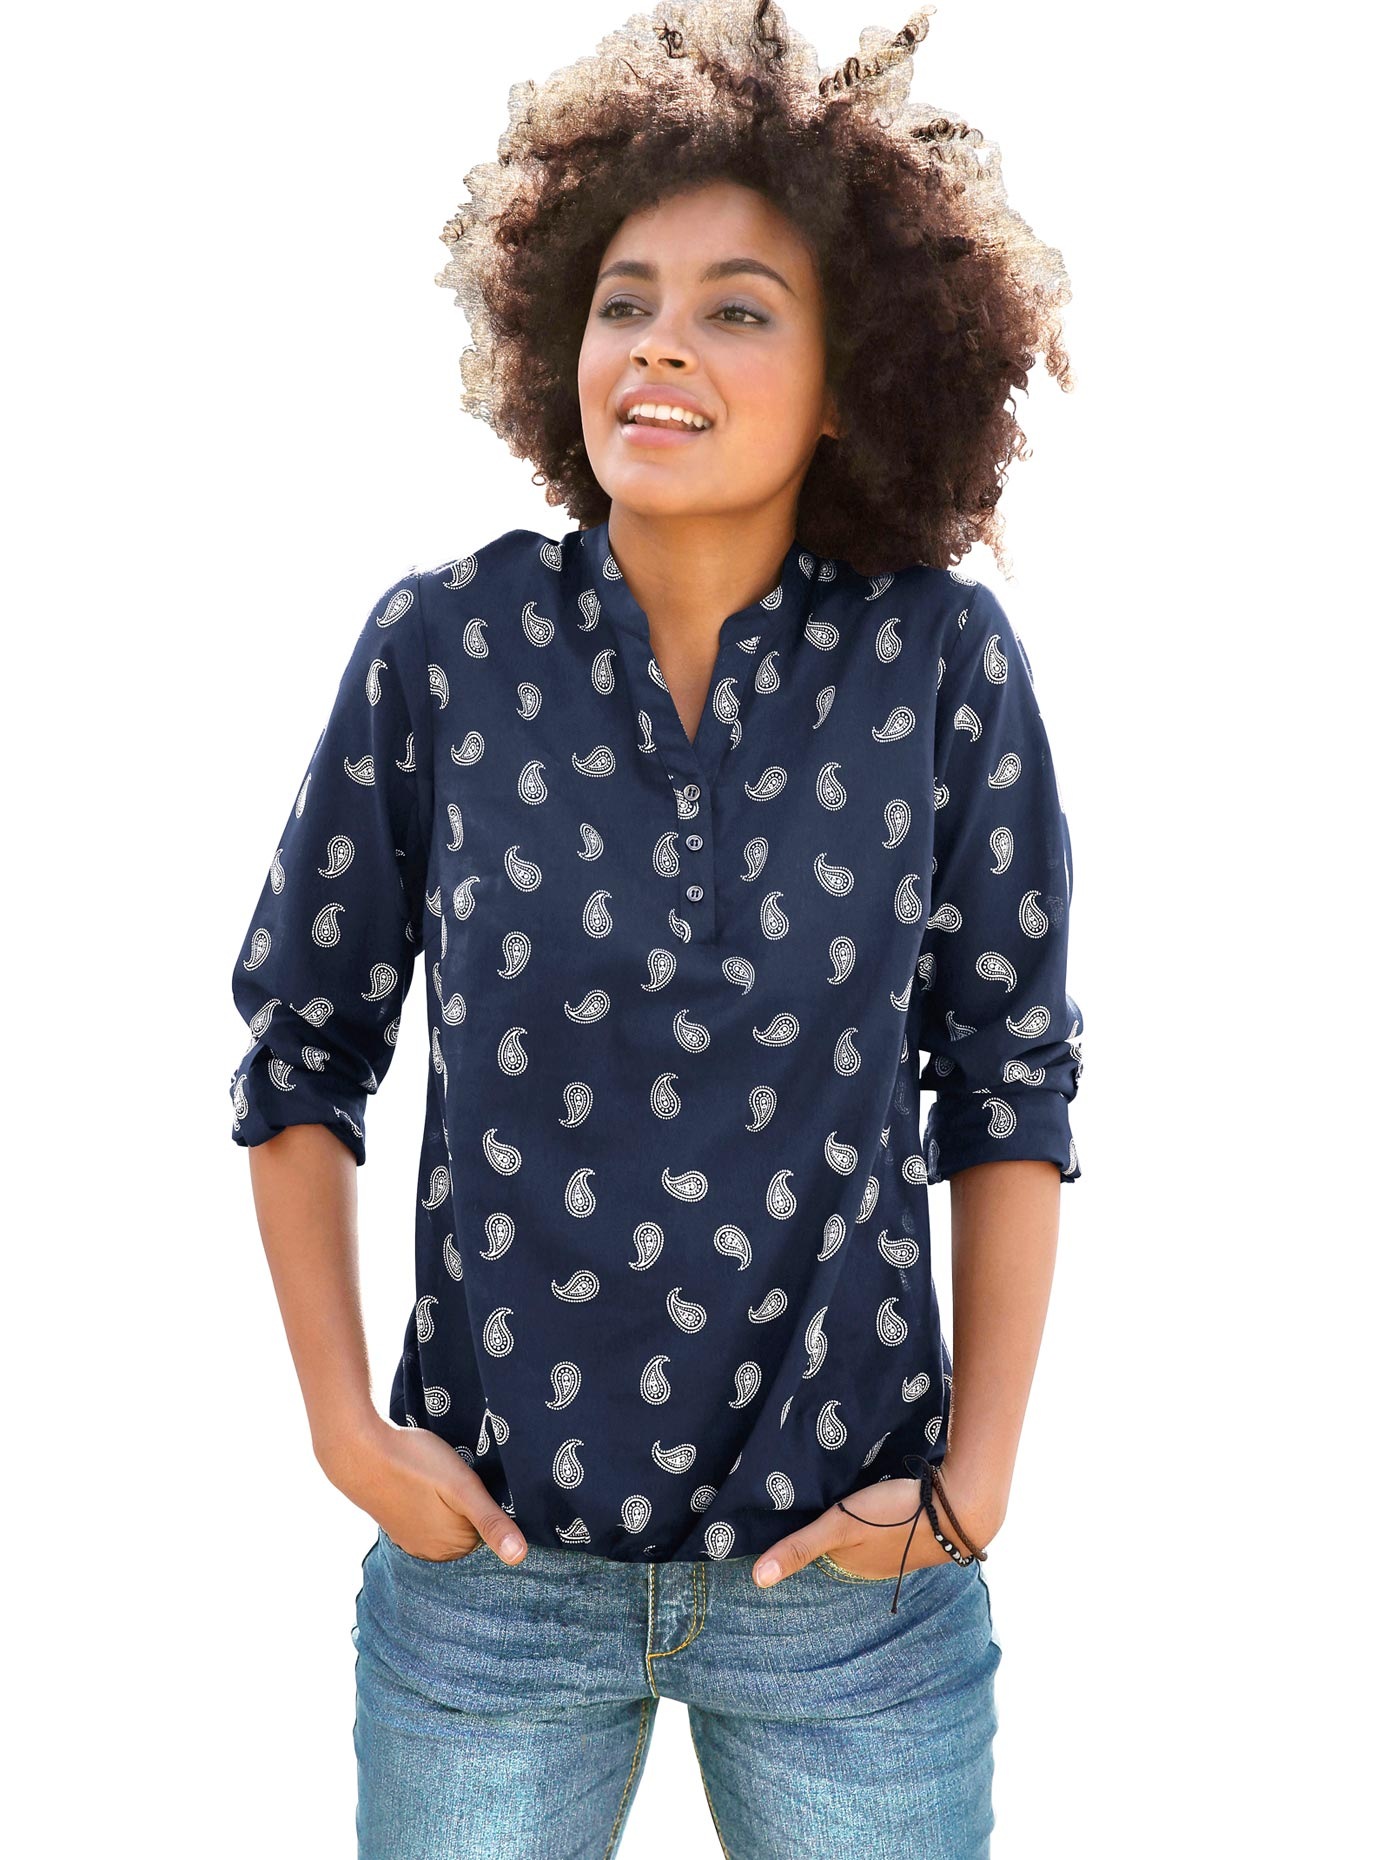 & | Ackermann Tuniken Damen-Bluse Damen kaufen jetzt bei online Blusen Modische